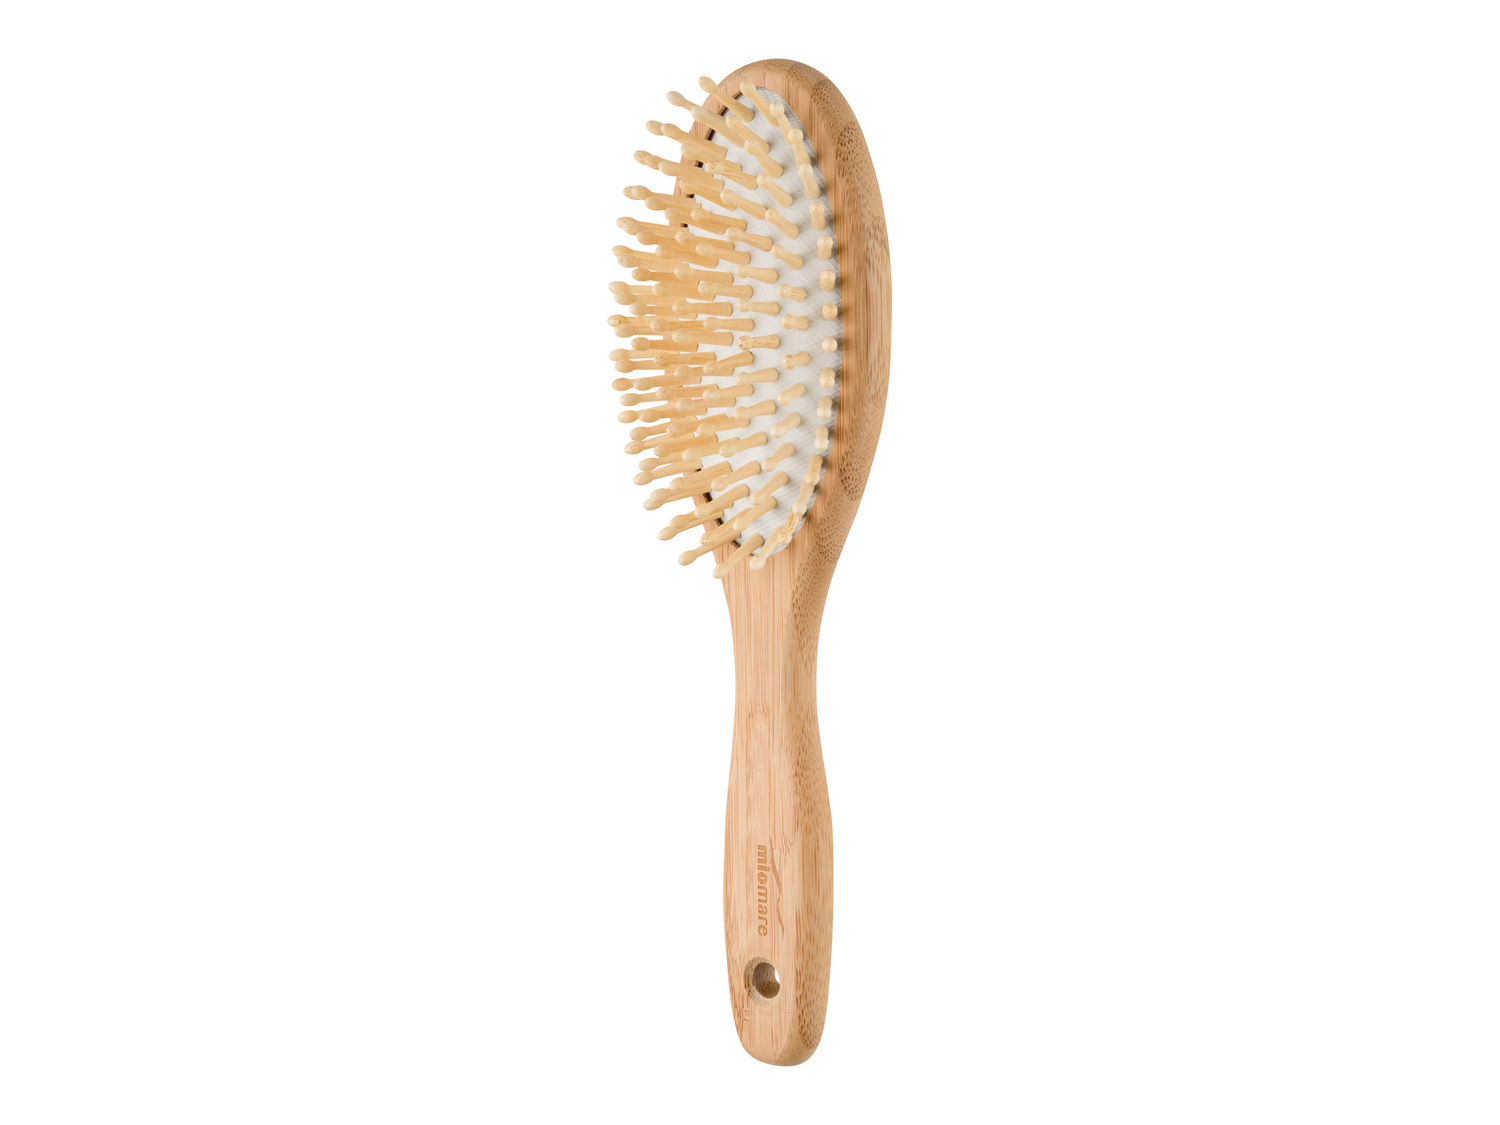 Spazzola per capelli in bambù Miomare, prezzo 3.99 &#8364;  

Caratteristiche